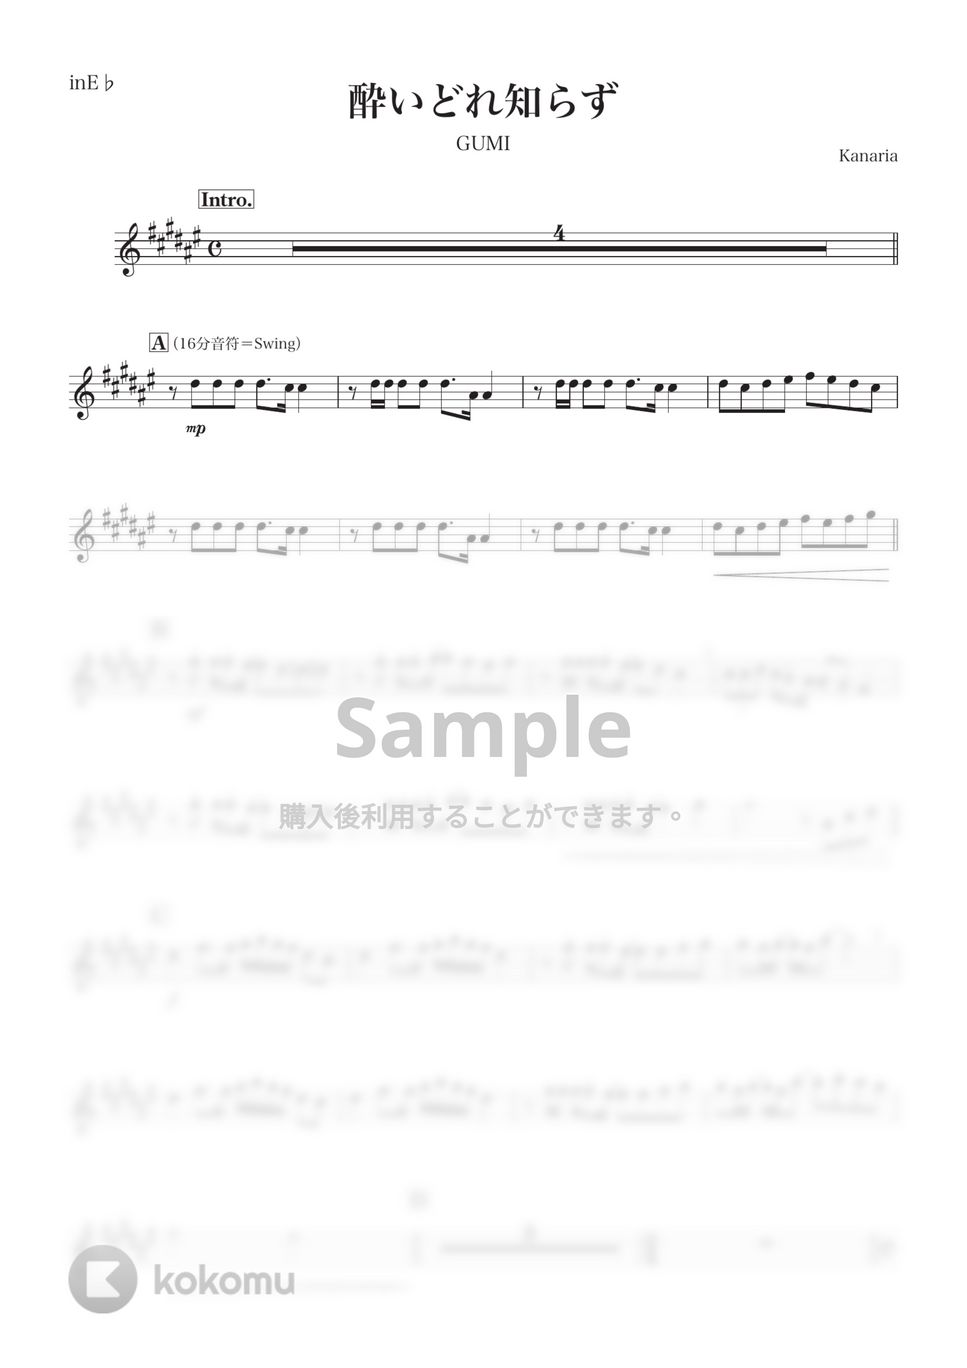 Kanaria - 酔いどれ知らず (E♭) by kanamusic